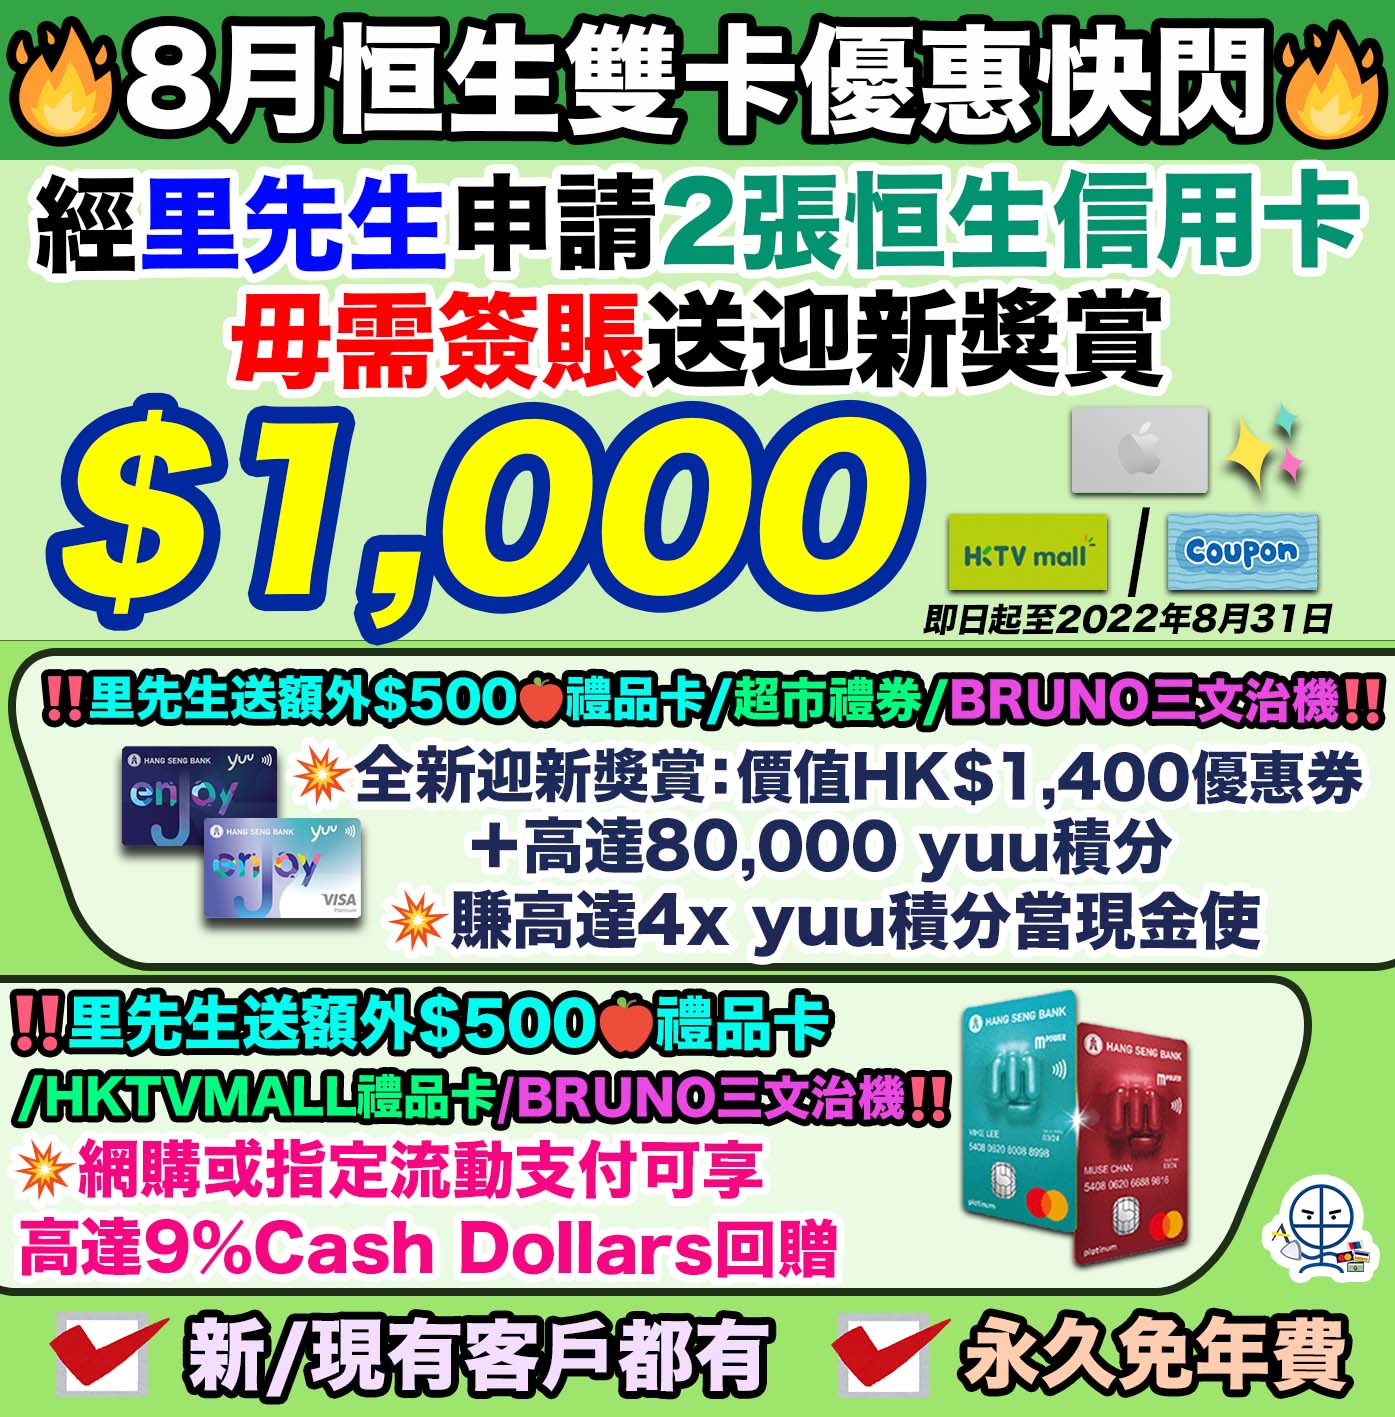 【恒生信用卡 惠康優惠】於惠康/Market Place/3hreesixty消費滿指定金額 即可賺高達$120 Cash Dollars/24,000 yuu積分！